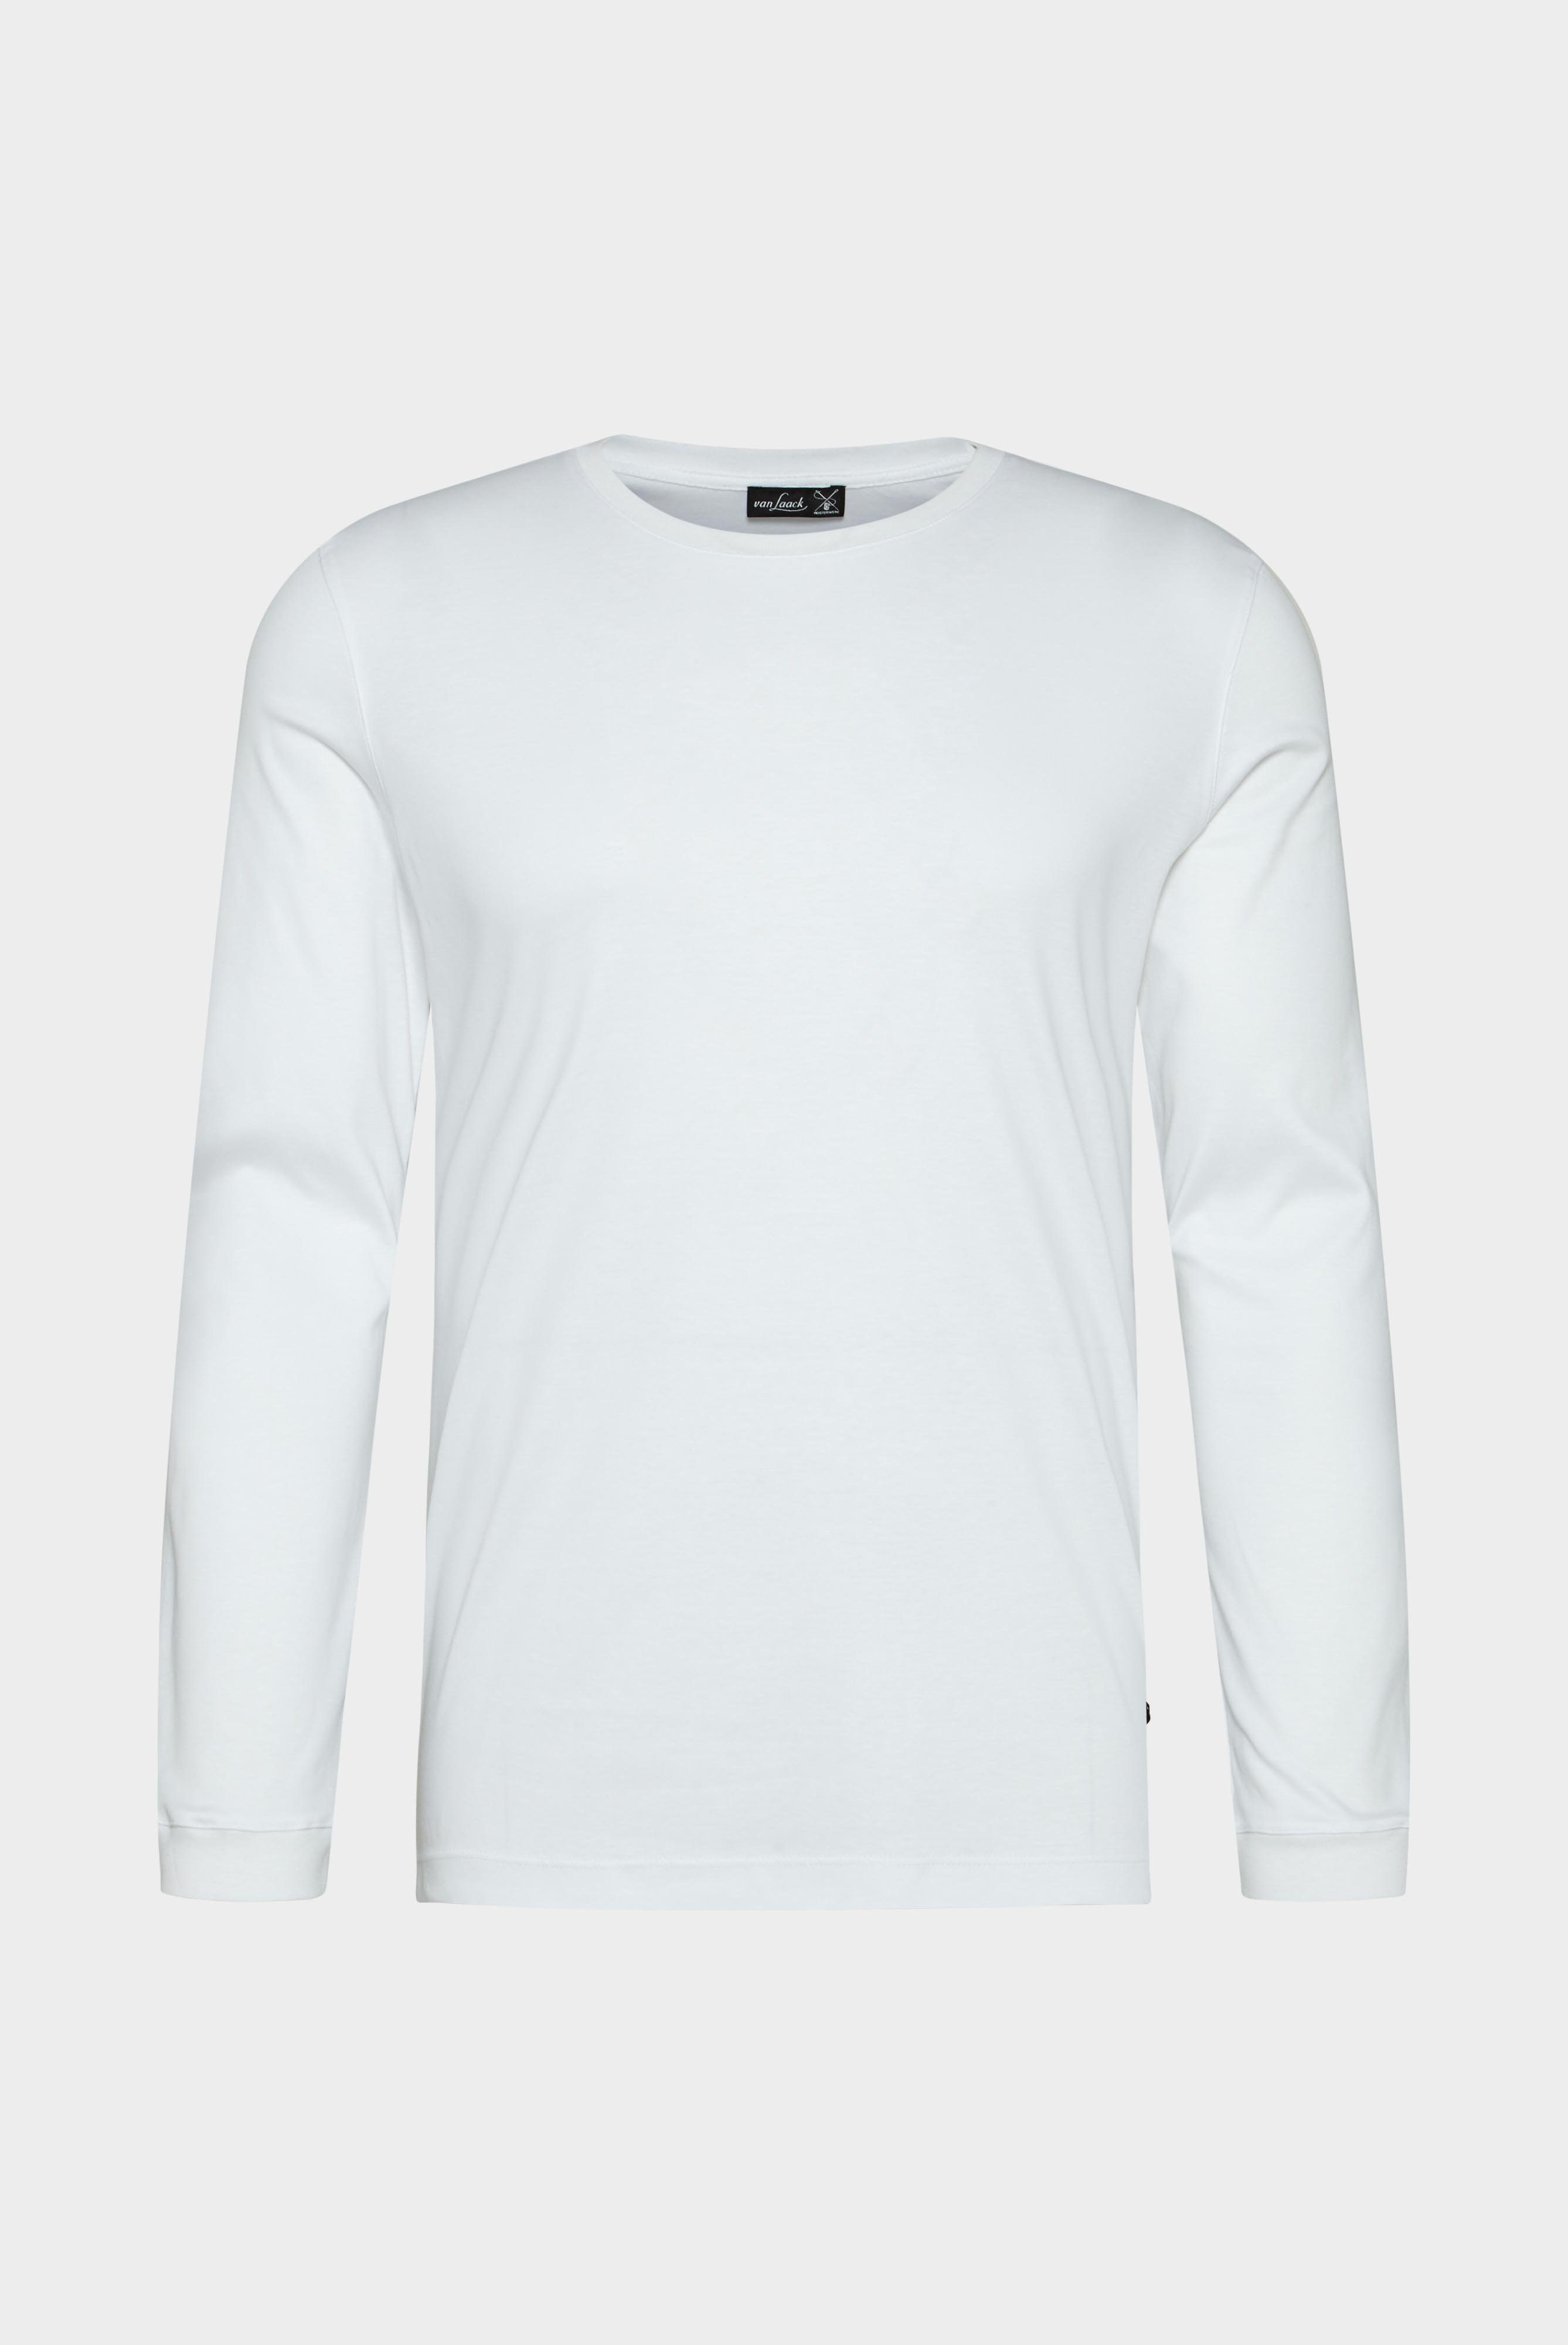 T-Shirts+Langarm Jersey T-Shirt mit Rundhals Slim Fit+20.1718.UX.180031.000.X3L